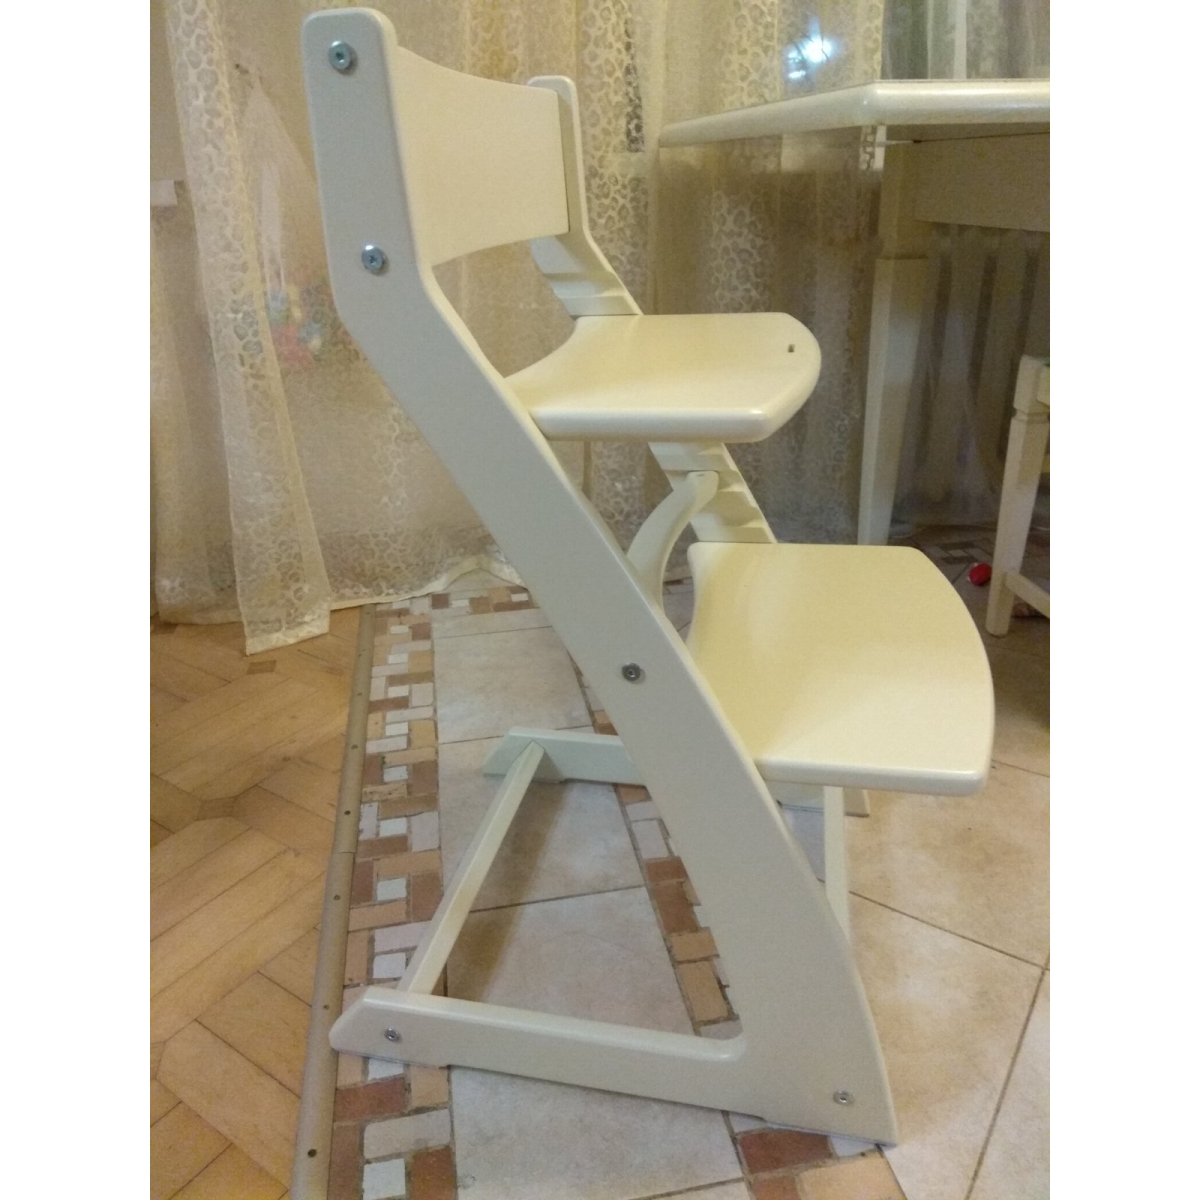 Детский регулируемый стул ВАСИЛЁК slim ВН-21Д (Слоновая кость)